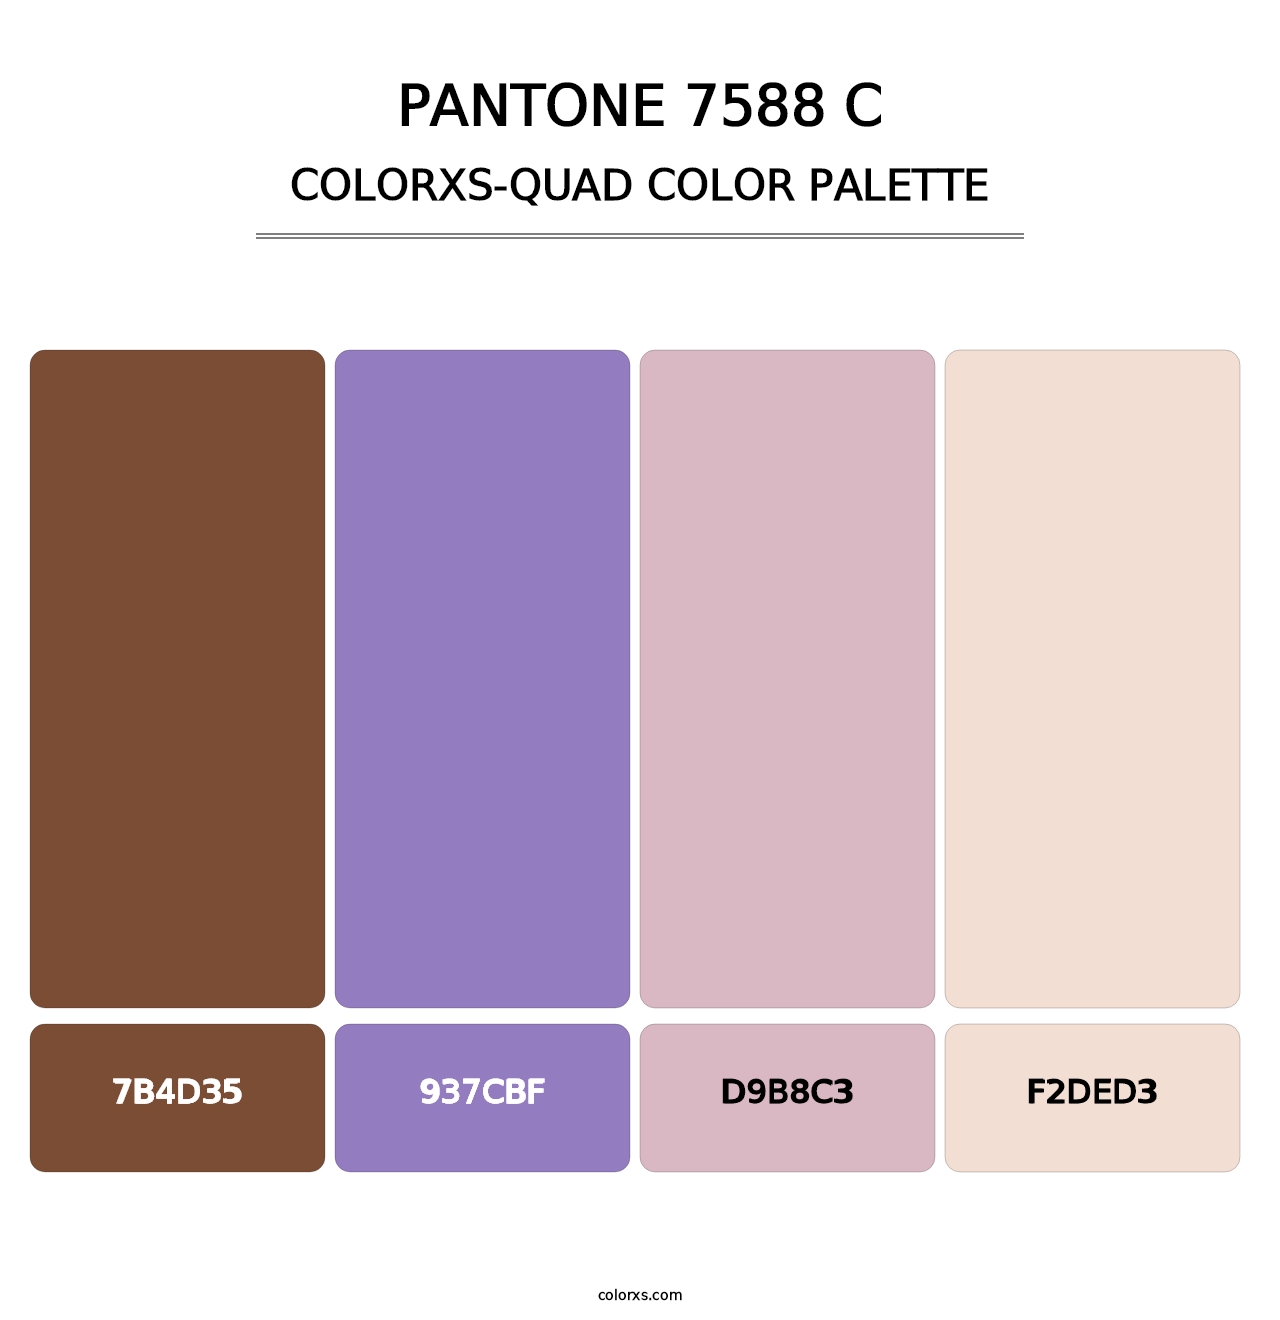 PANTONE 7588 C - Colorxs Quad Palette